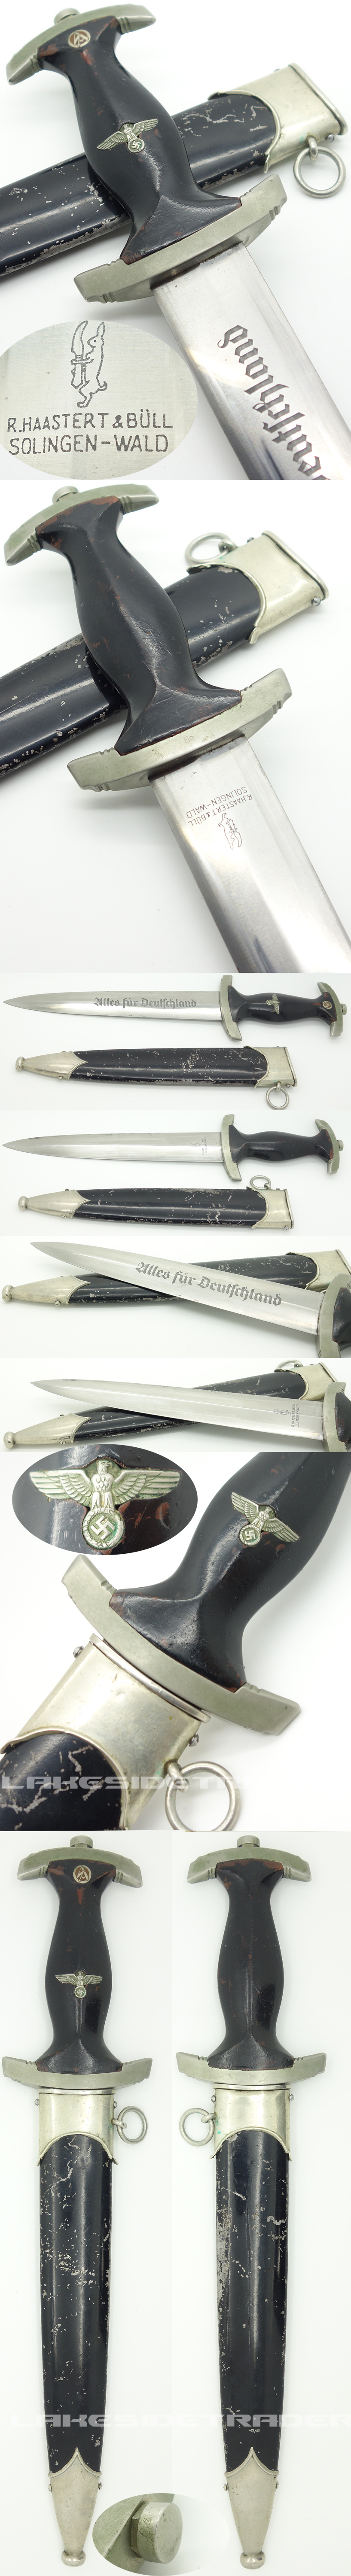 Interesting Early NSKK Dagger by Haastert & Bull